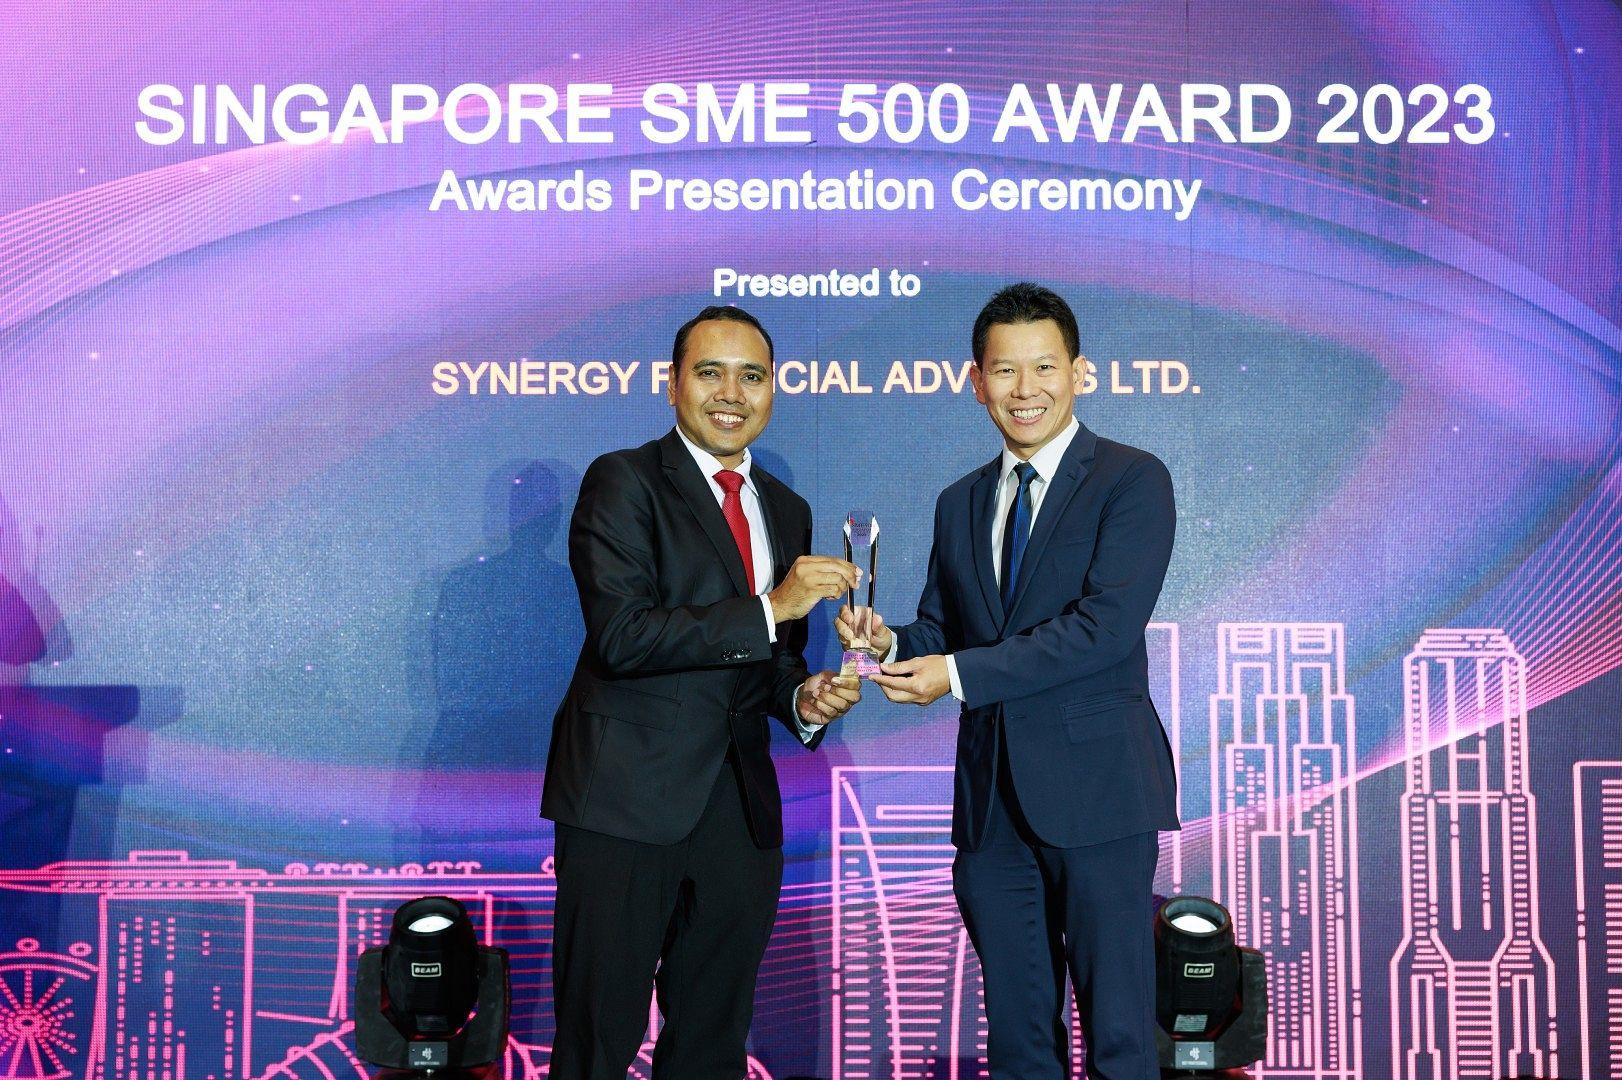 SYNERGY Receives Singapore SME 500 Company Award for 2023